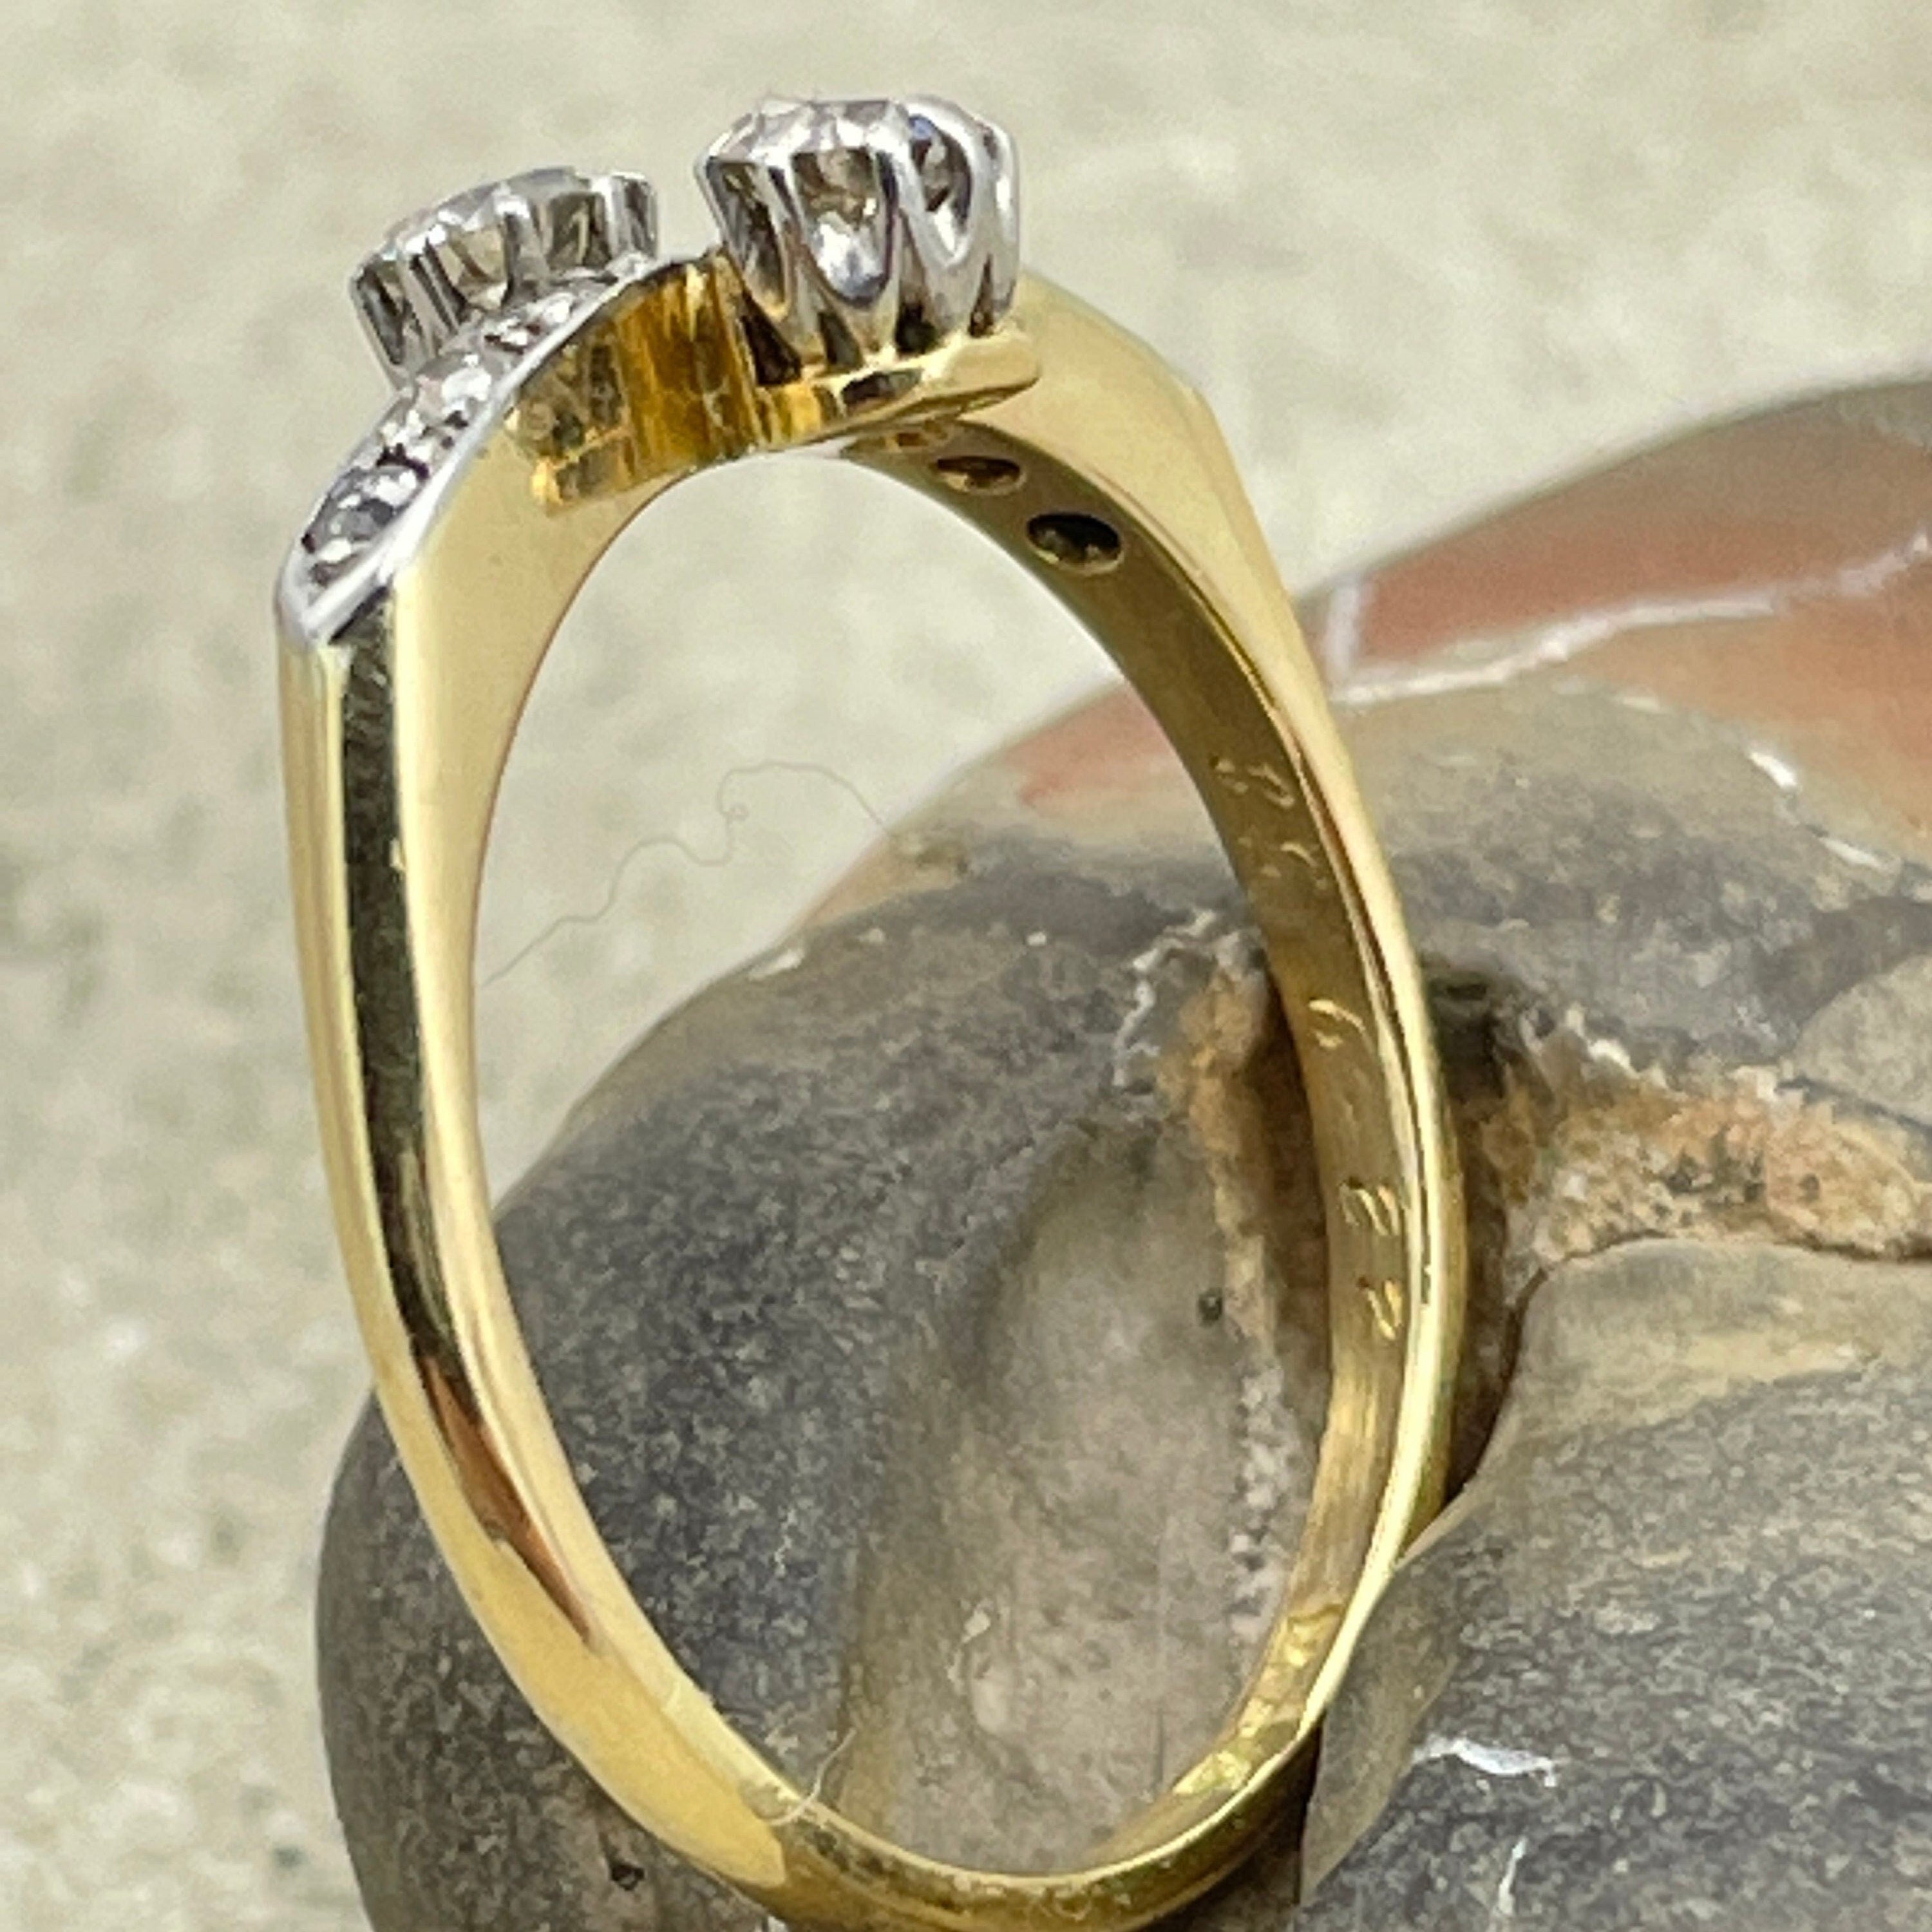 Original Art deco, Toi et Moi 18ct Gold & Platinum Diamond Ring, c1930s